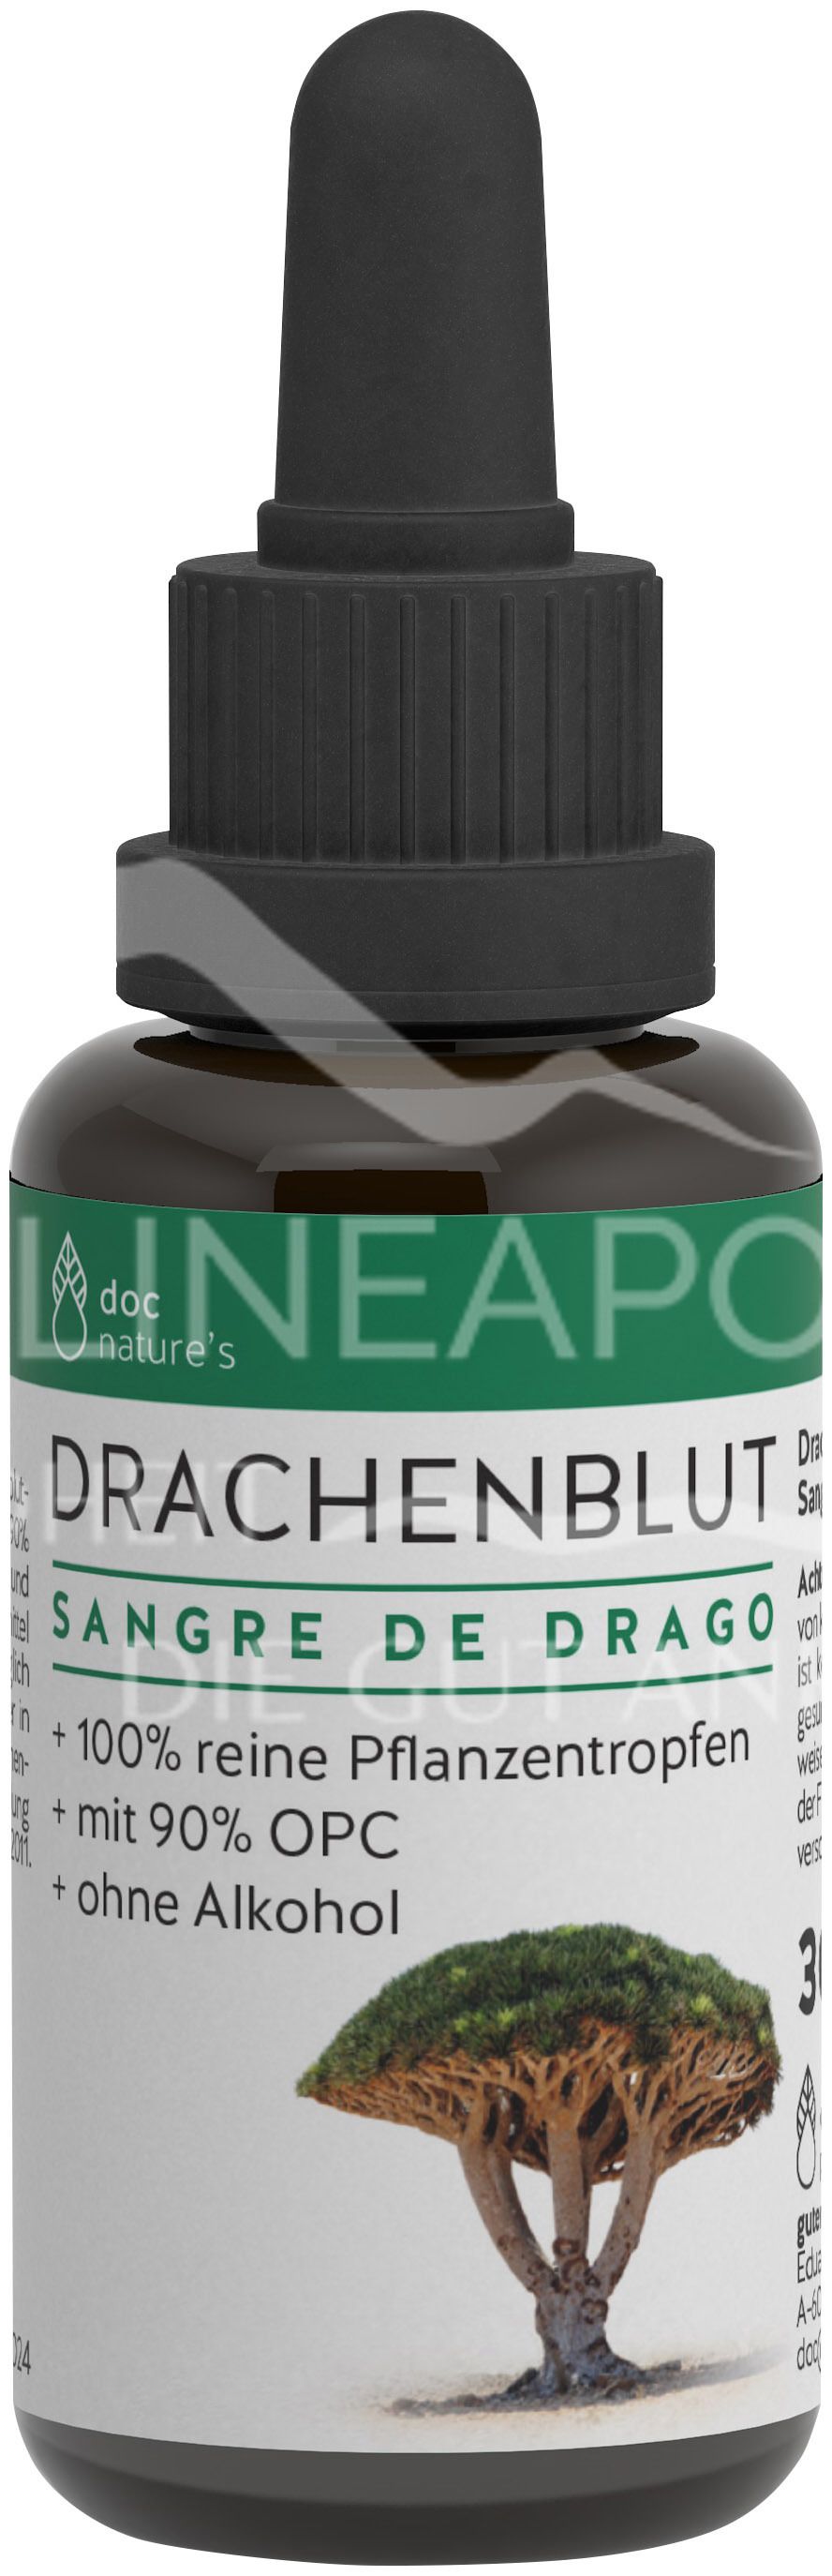 doc nature’s DRACHENBLUT Sangre de Drago Tropfen